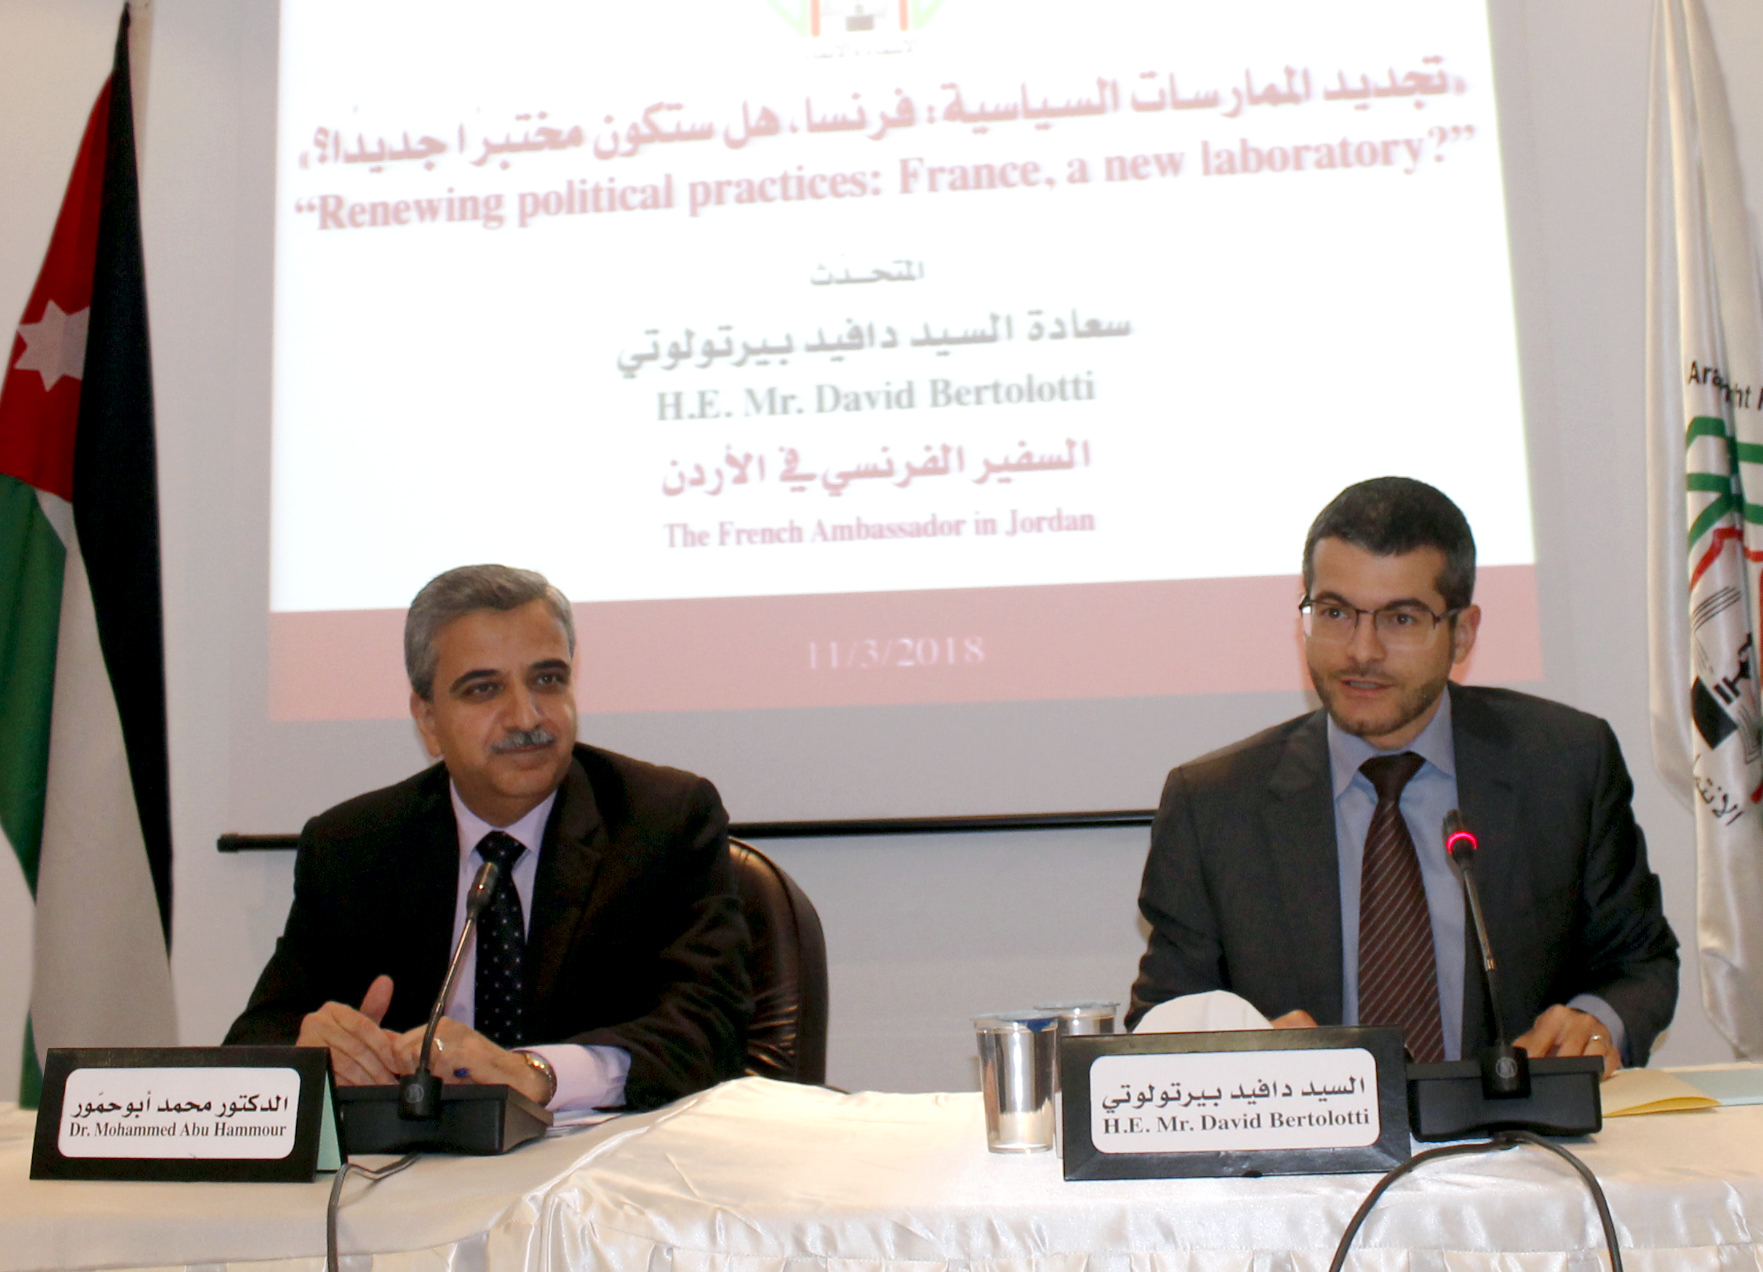 السفير الفرنسي يحاضر في منتدى الفكر العربي حول تجديد الممارسات السياسية